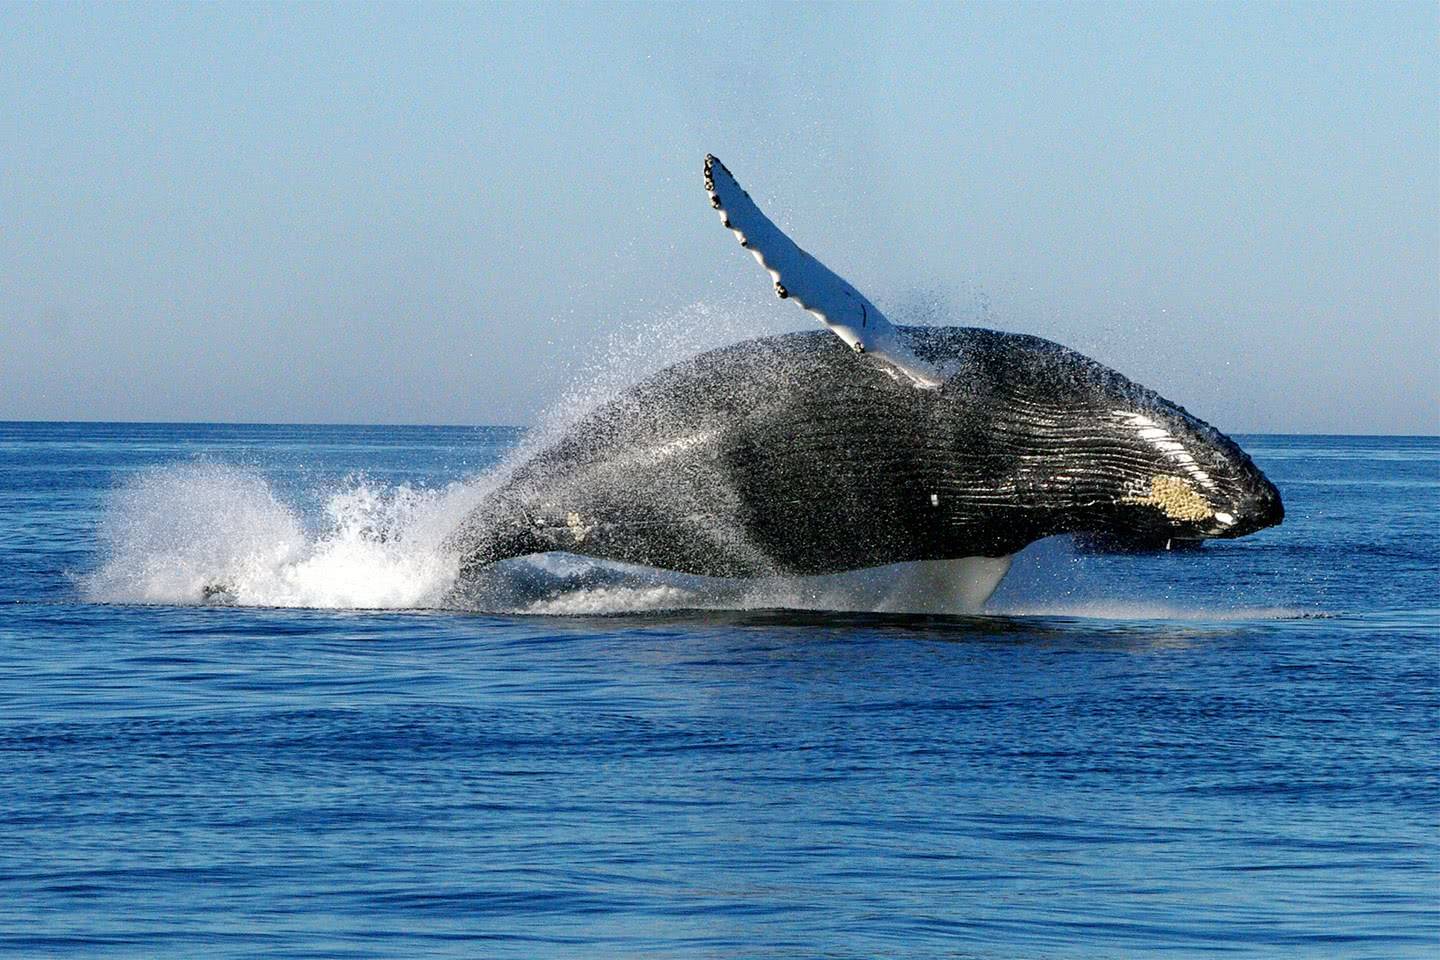 菲律宾海滩现"搁浅巨鲸" 走近一看吓一跳-北京时间